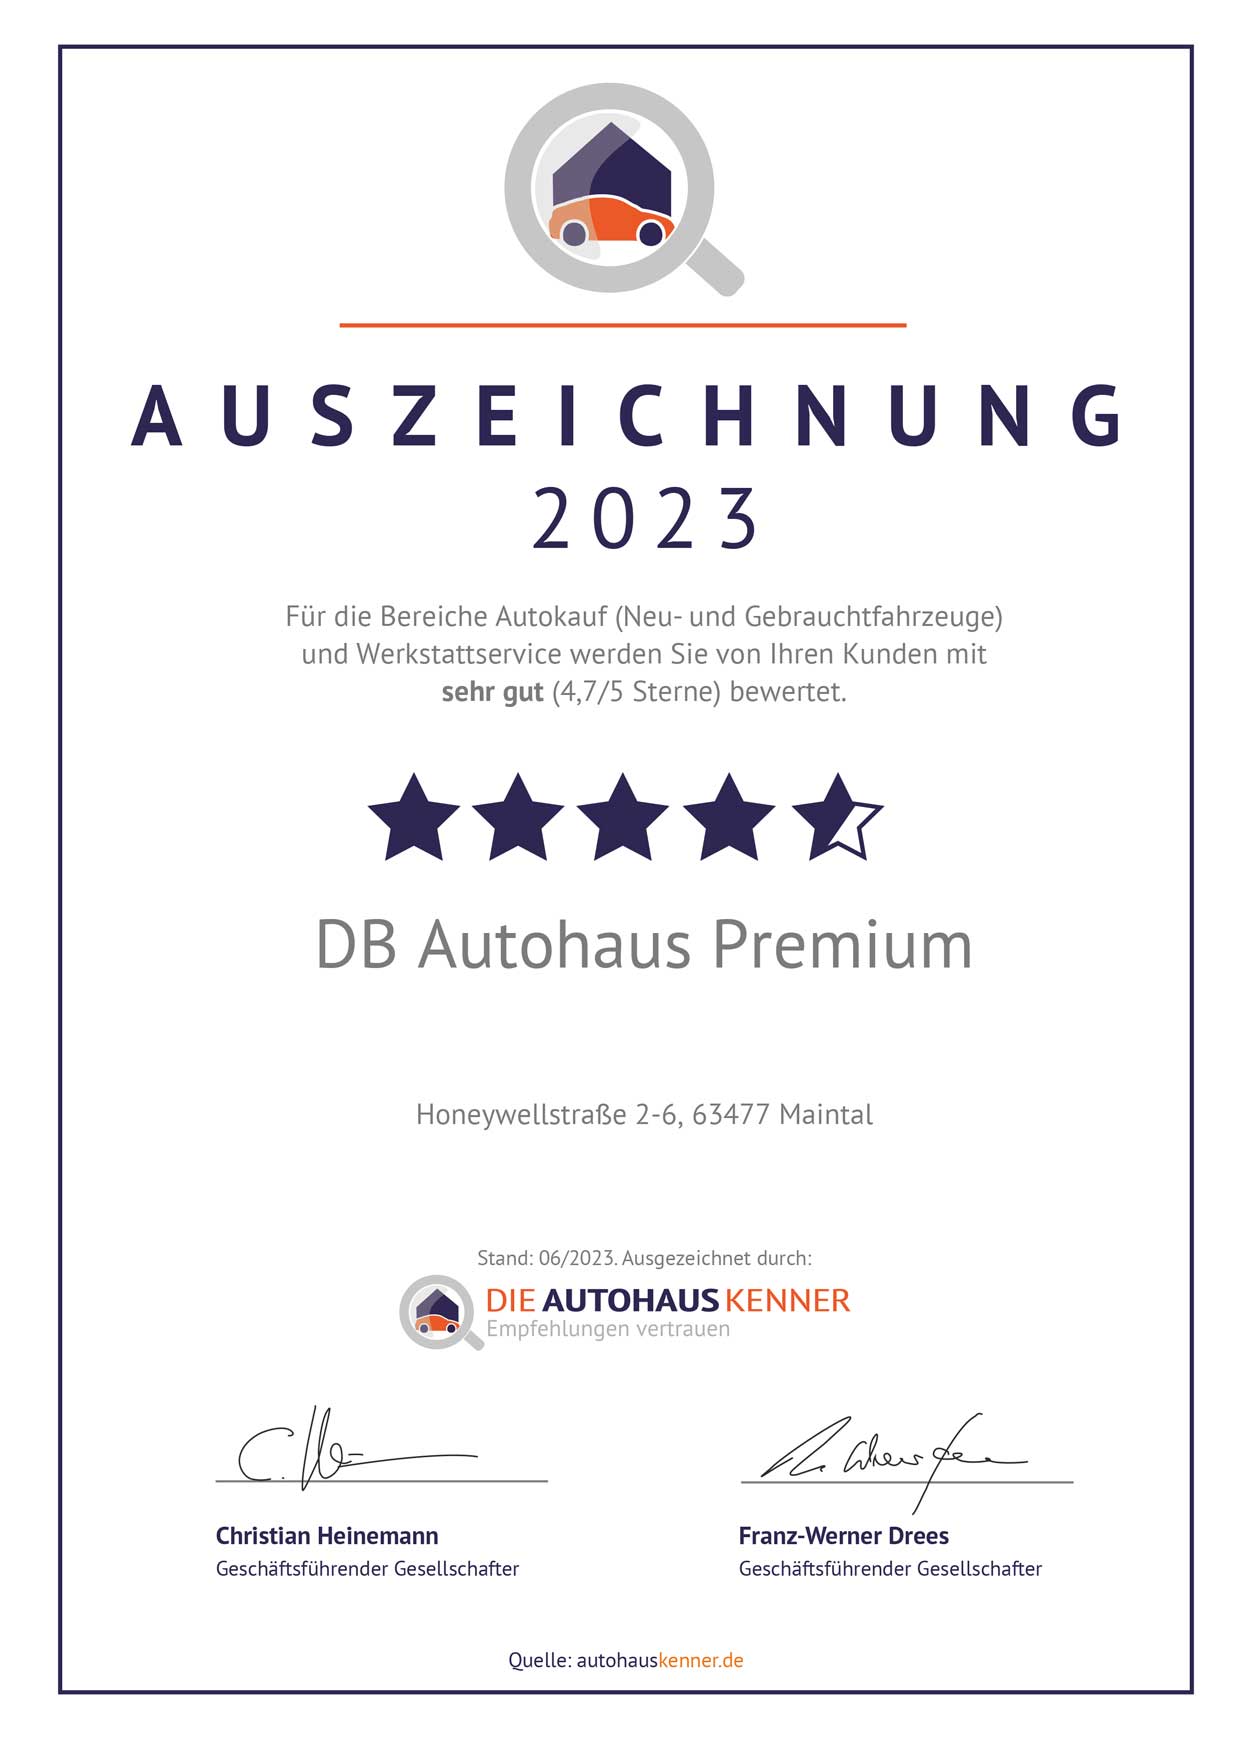 Auszeichnung von Autohauskenner für DB Autohaus Premium Maintal 2023